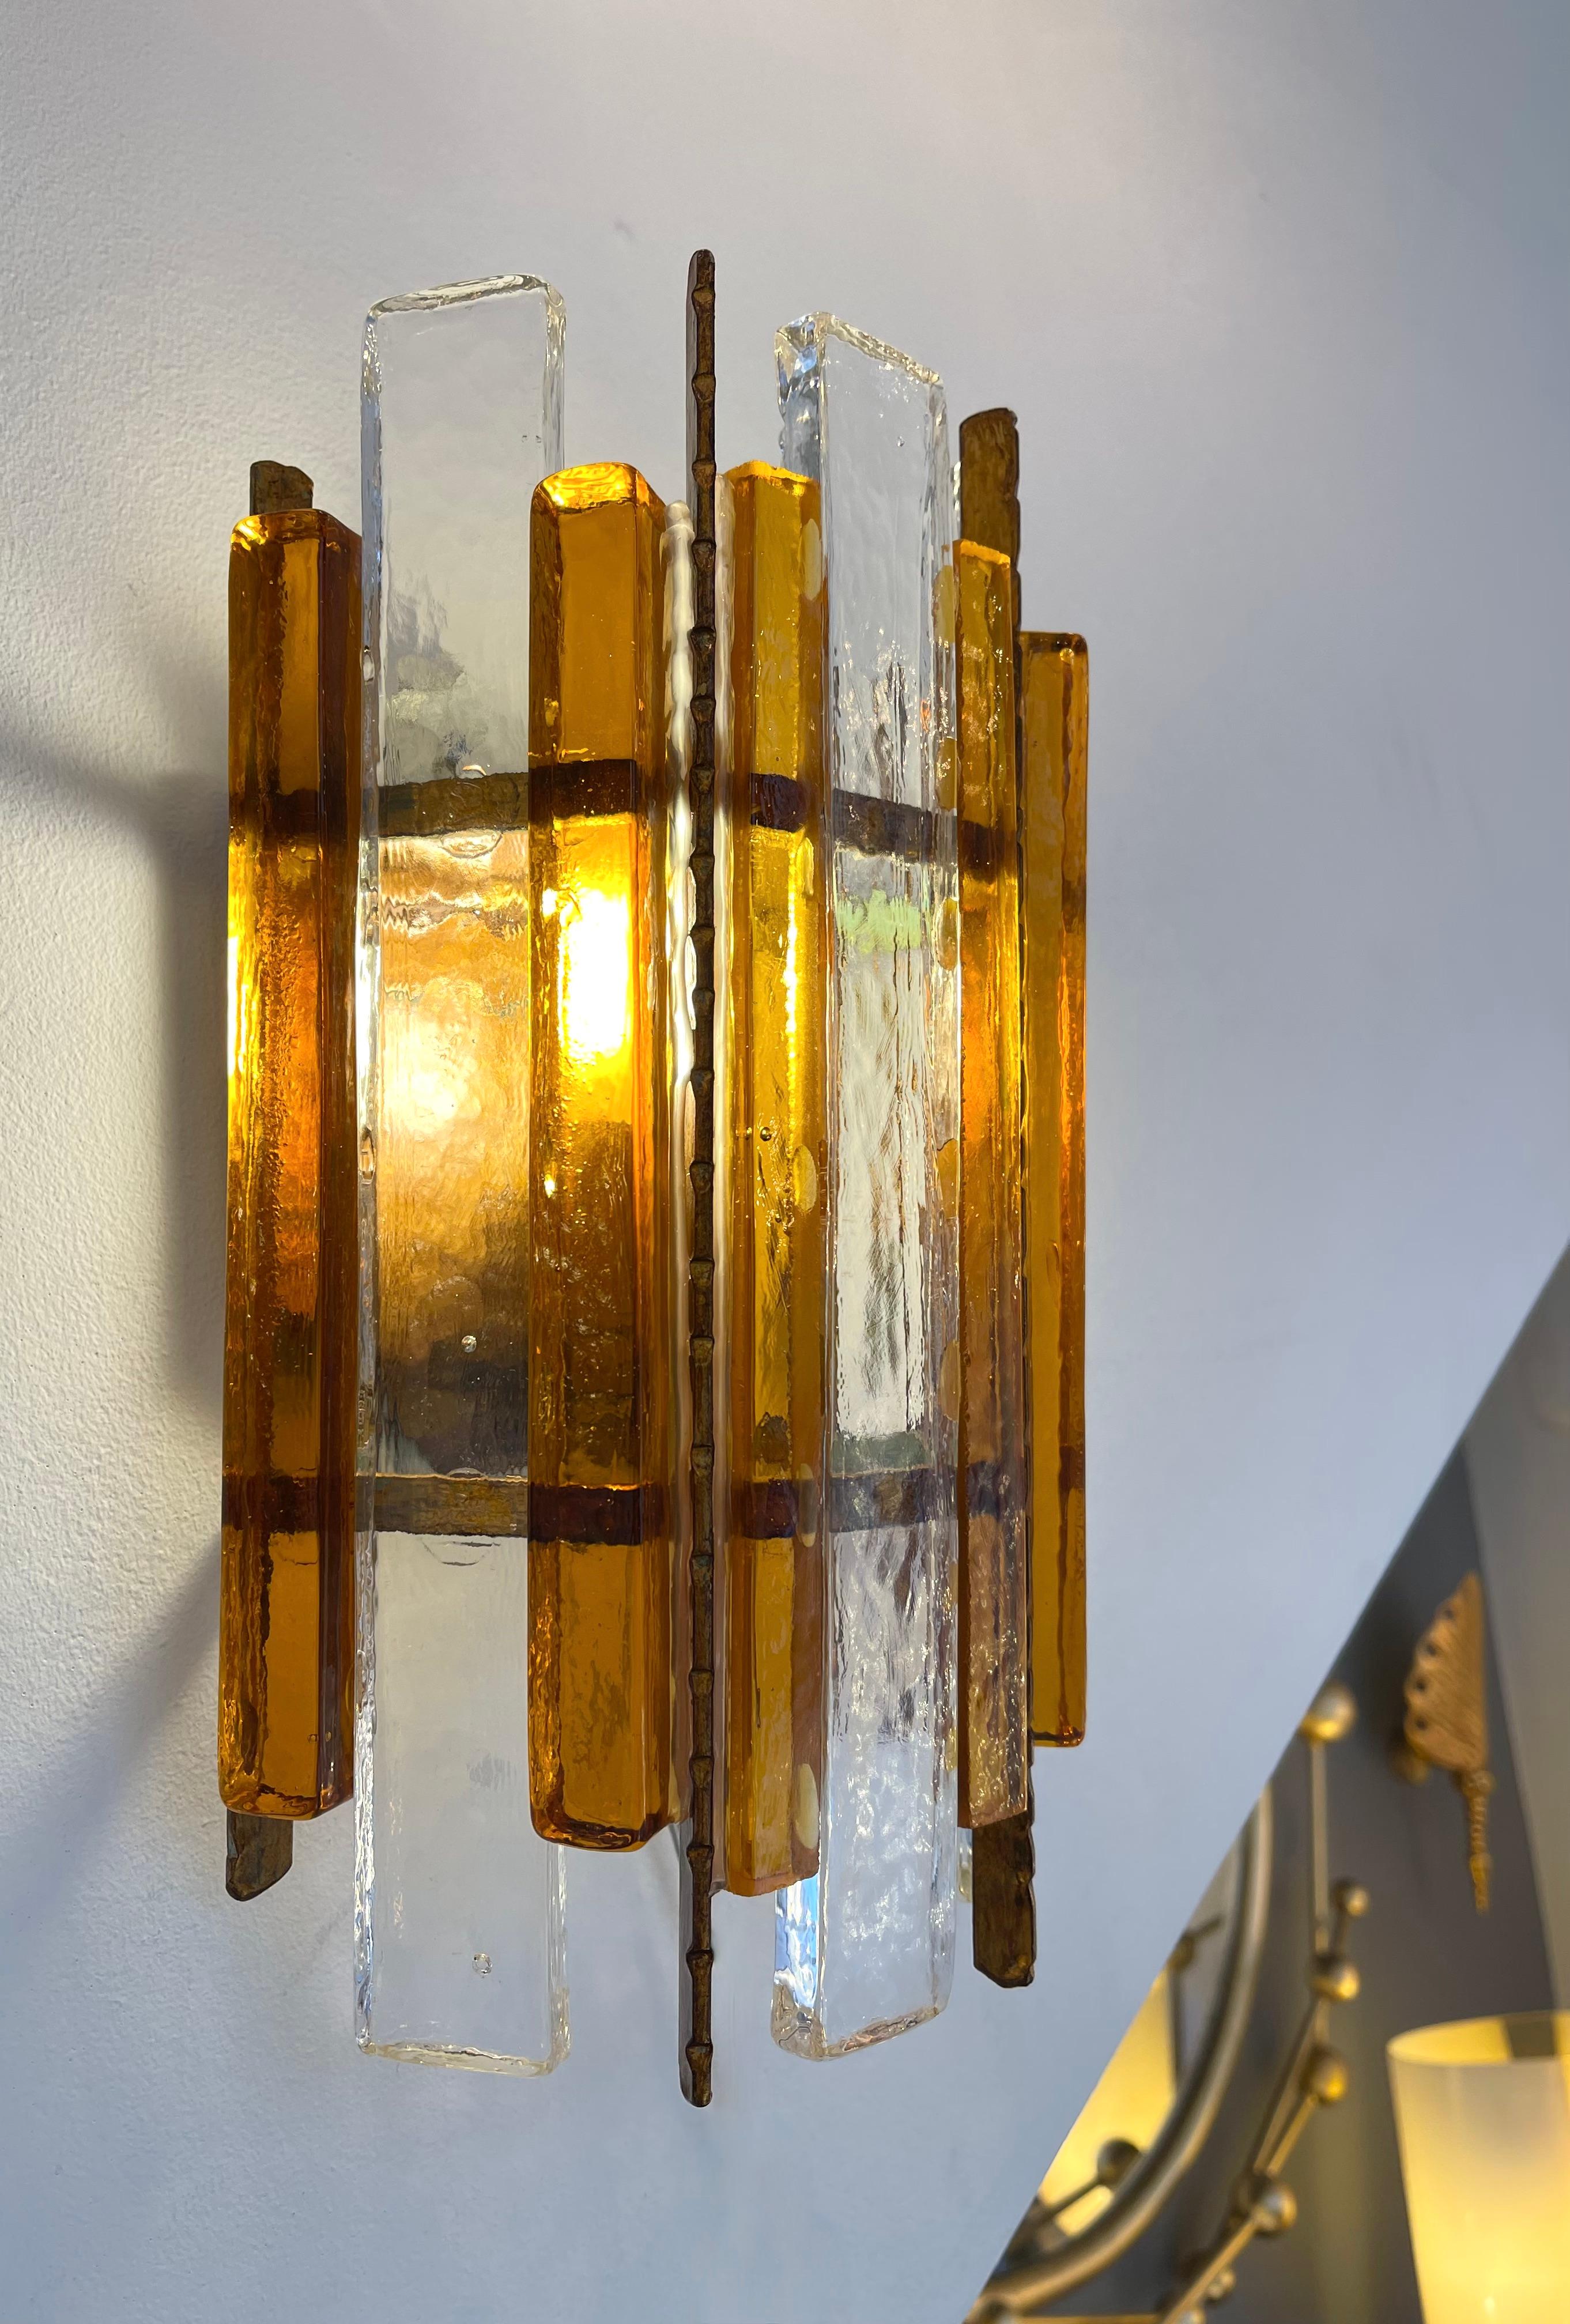 Mid-Century Modern Paar Wandlampen Leuchten Leuchter gehämmertes Glas und Schmiedeeisen, Vergoldung Gold-Kupfer-Patina, von der Manufaktur Longobard in Verona in einem brutalistischen Stil, die gleichzeitige von Biancardi Jordan Arte und Poliarte in